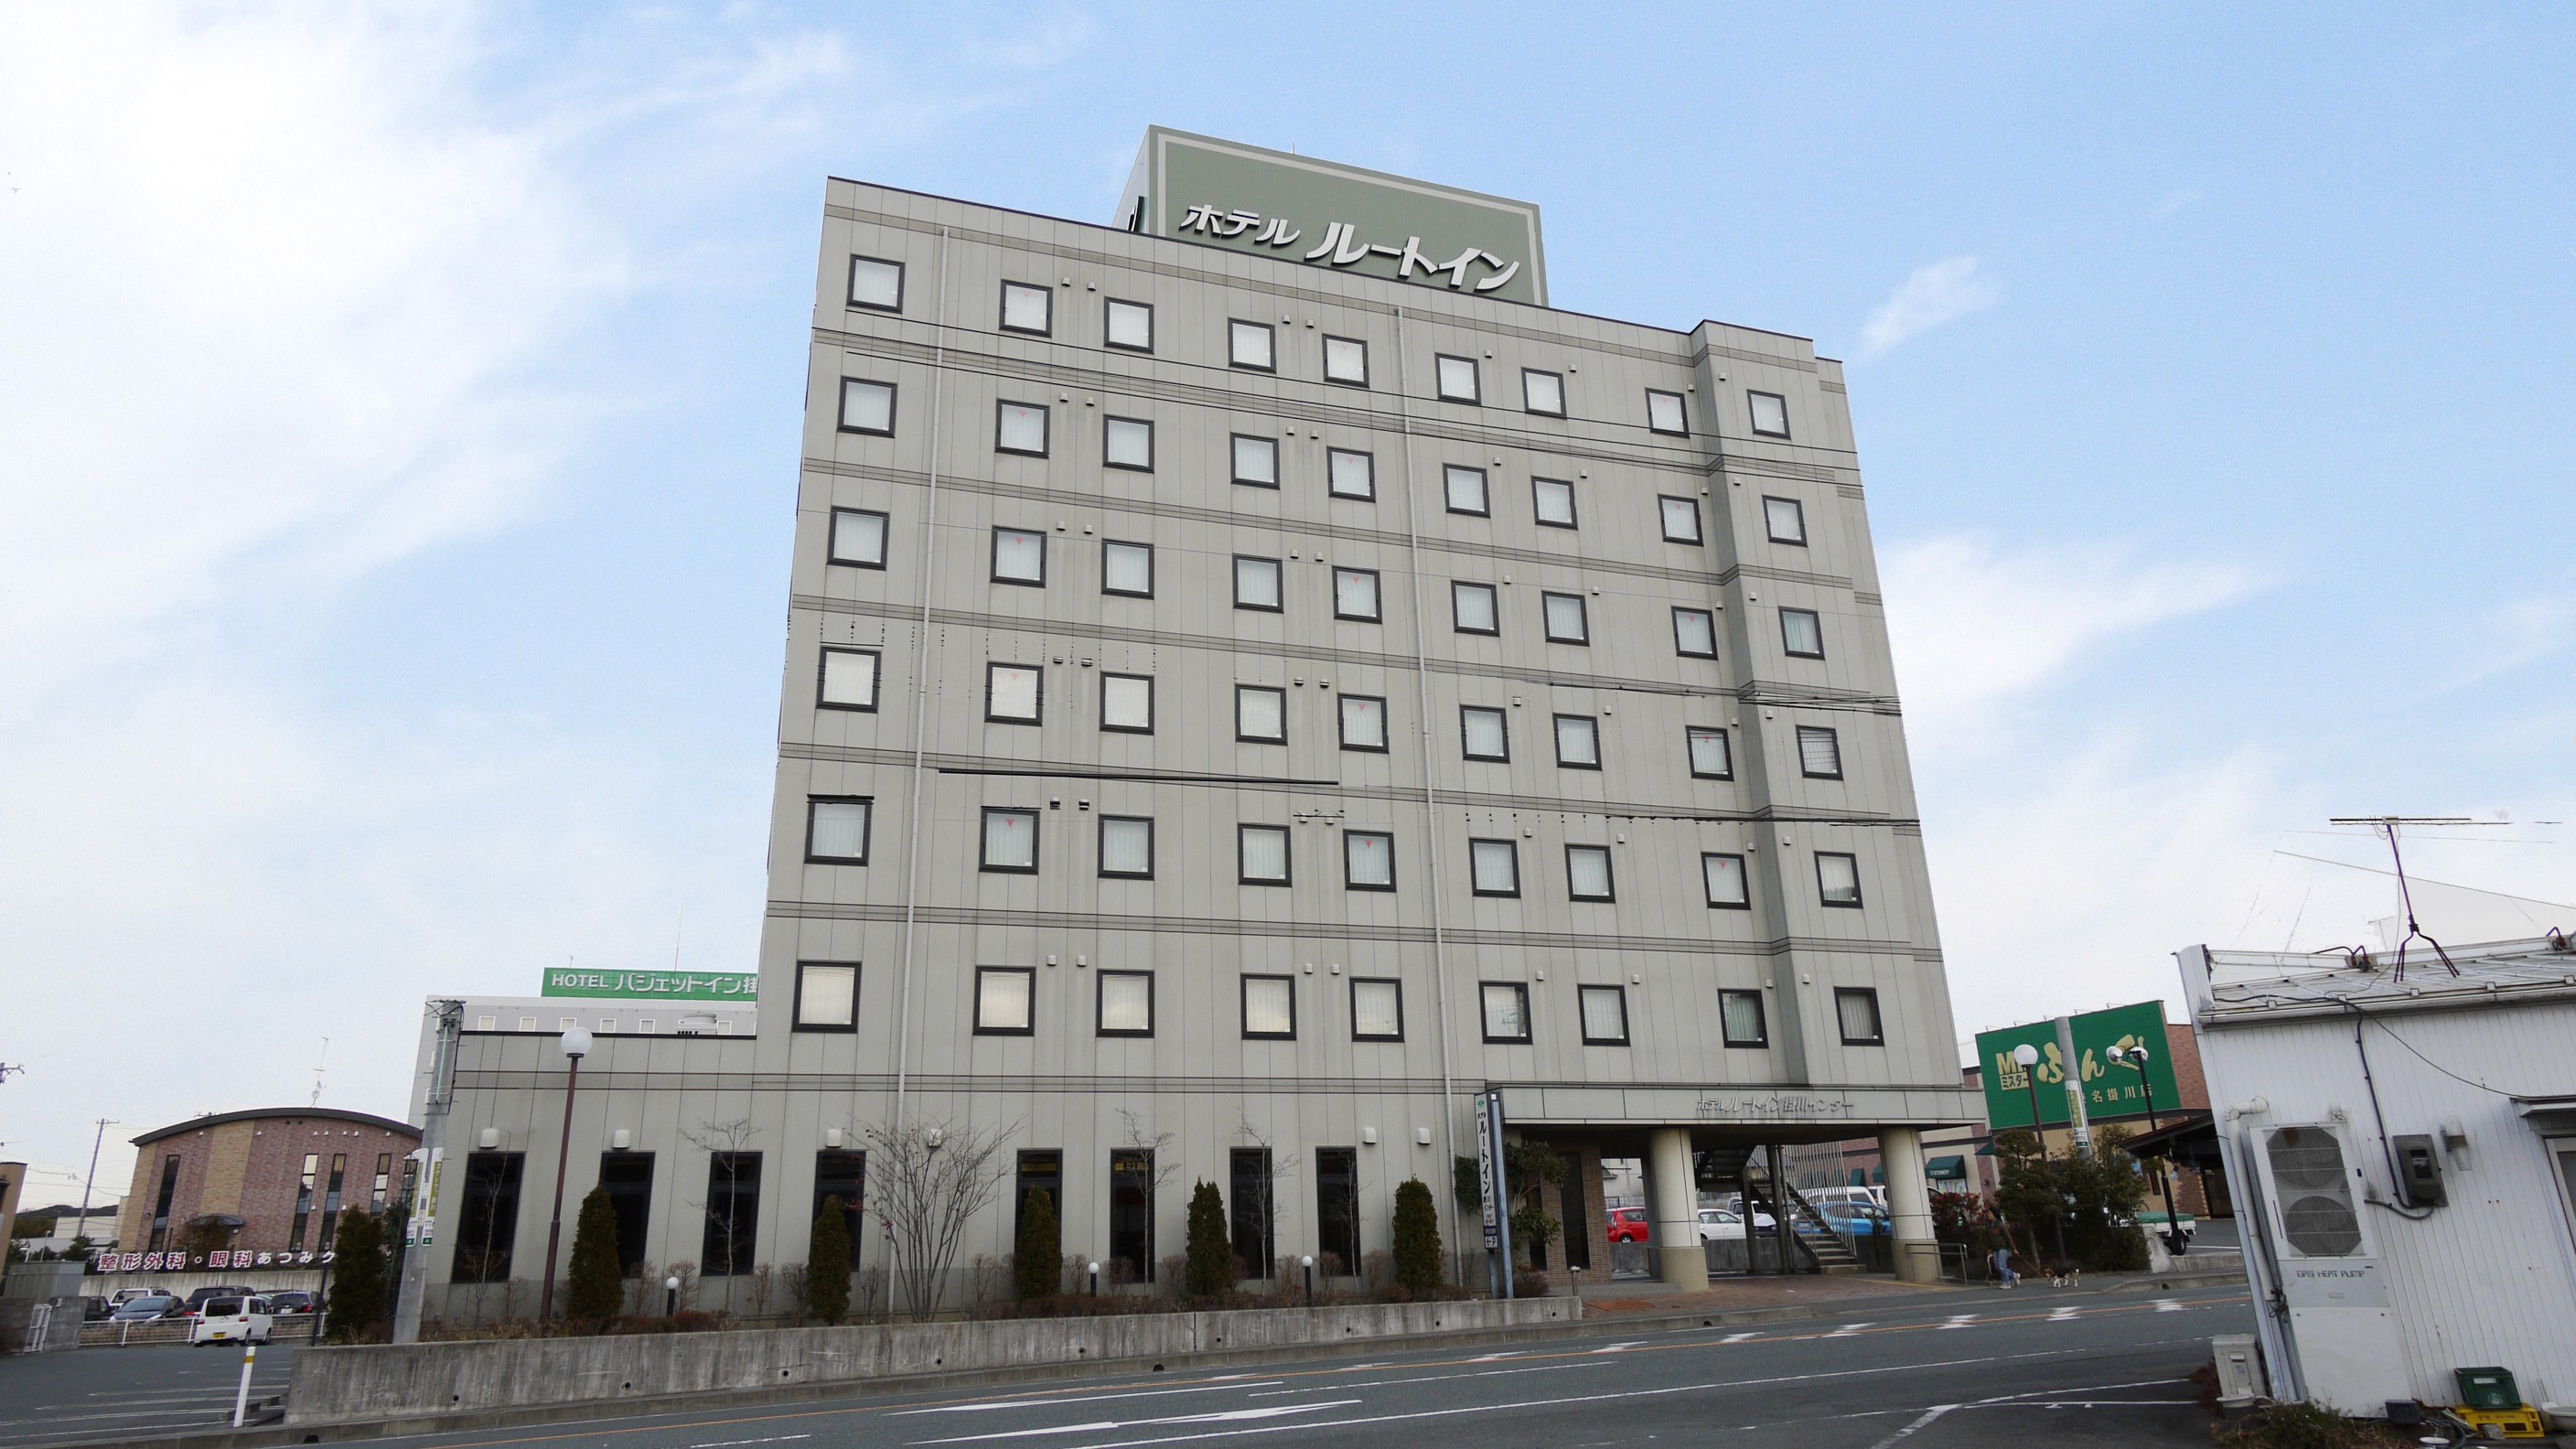 掛川交流道 Route-Inn 飯店　